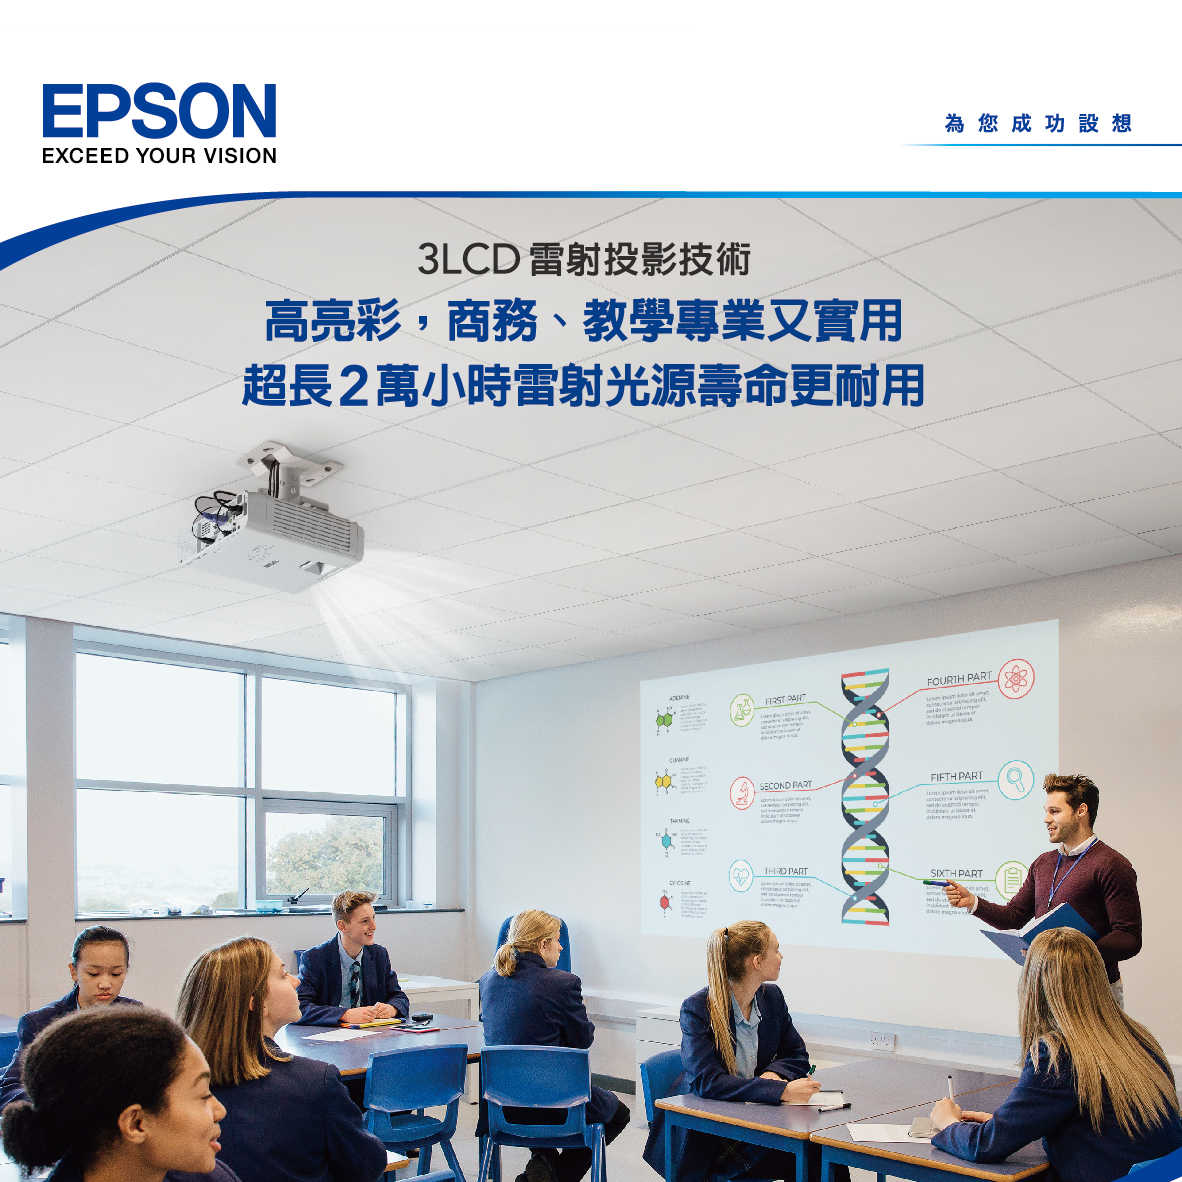 EPSON 愛普生 EB-L630SU 雷射短焦 教學 / 商務 投影機 | 金曲音響